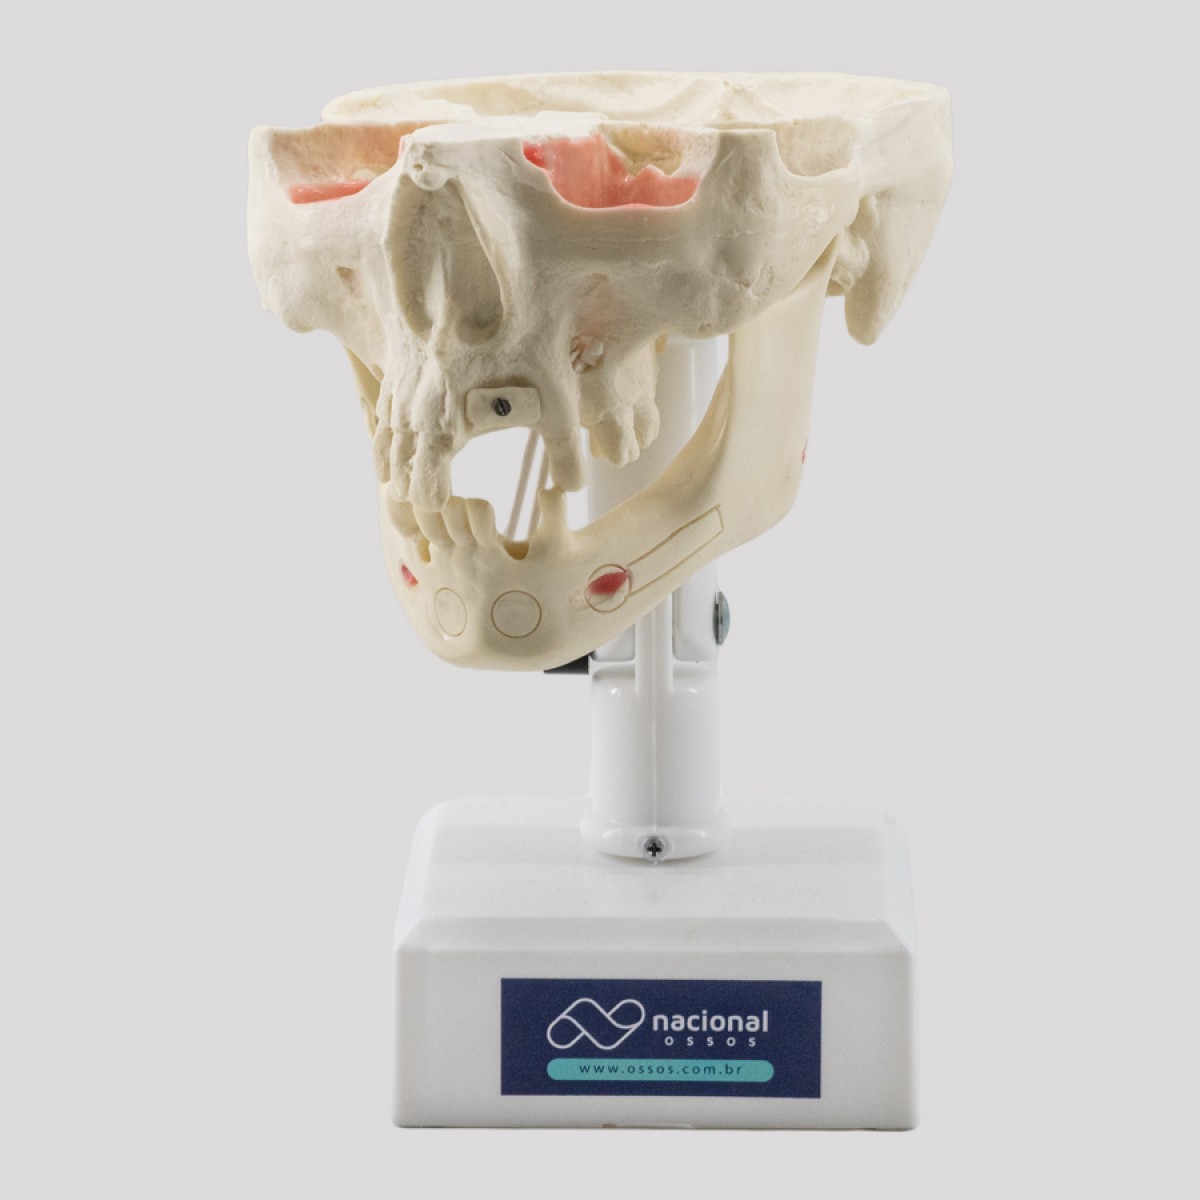 Manequim-trabalhado-para-odontologia-enxerto-ósseo-levantamento-seio-da-face-fabricado-por-nacional-ossos-artificial-jau-sp-brasil-5